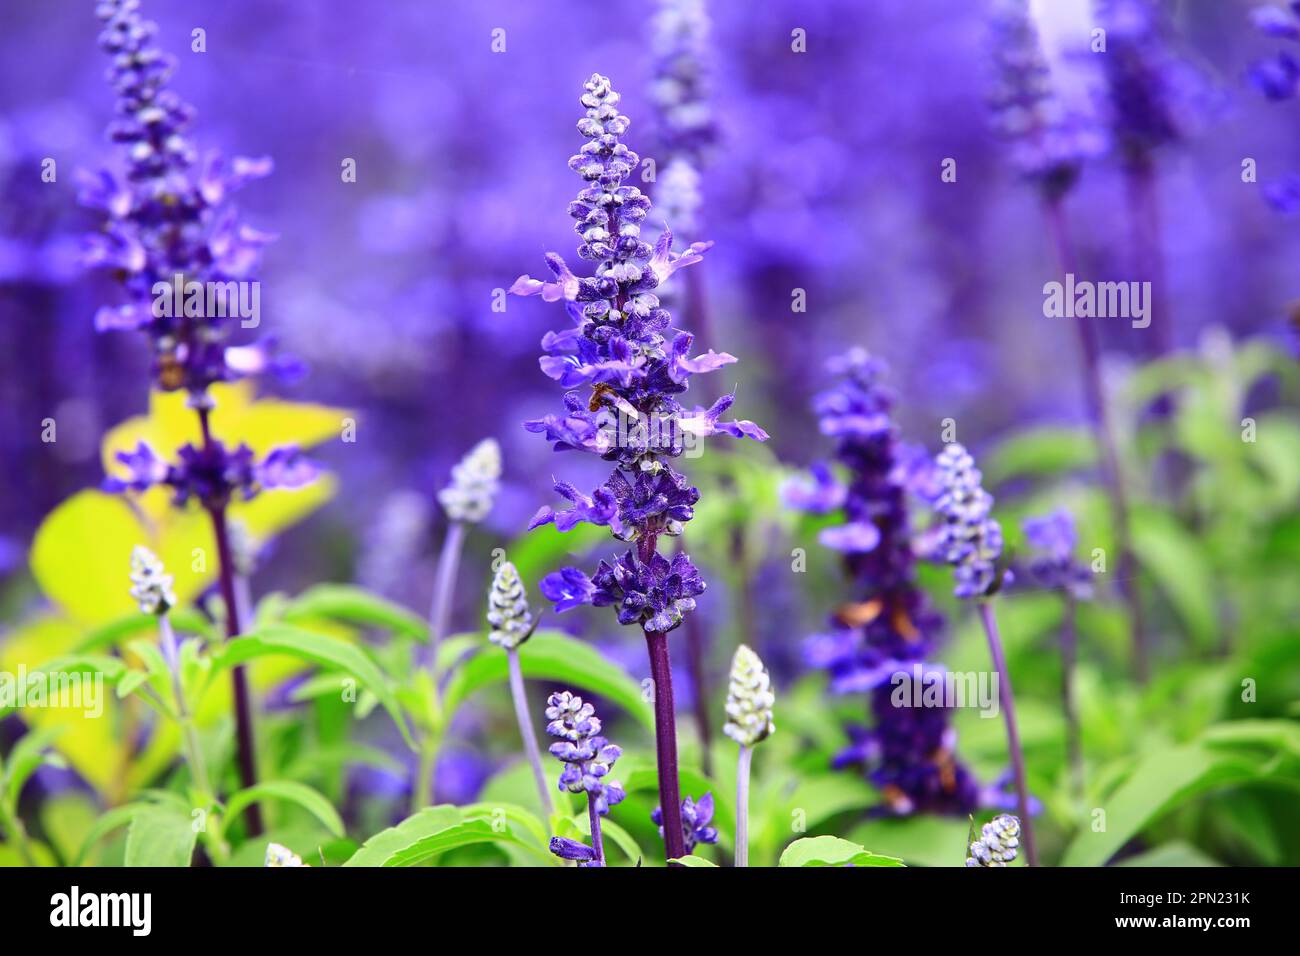 Fioritura Mealy fiori di salvia, primo piano di splendidi fiori di salvia blu fioritura in giardino in una giornata di sole Foto Stock